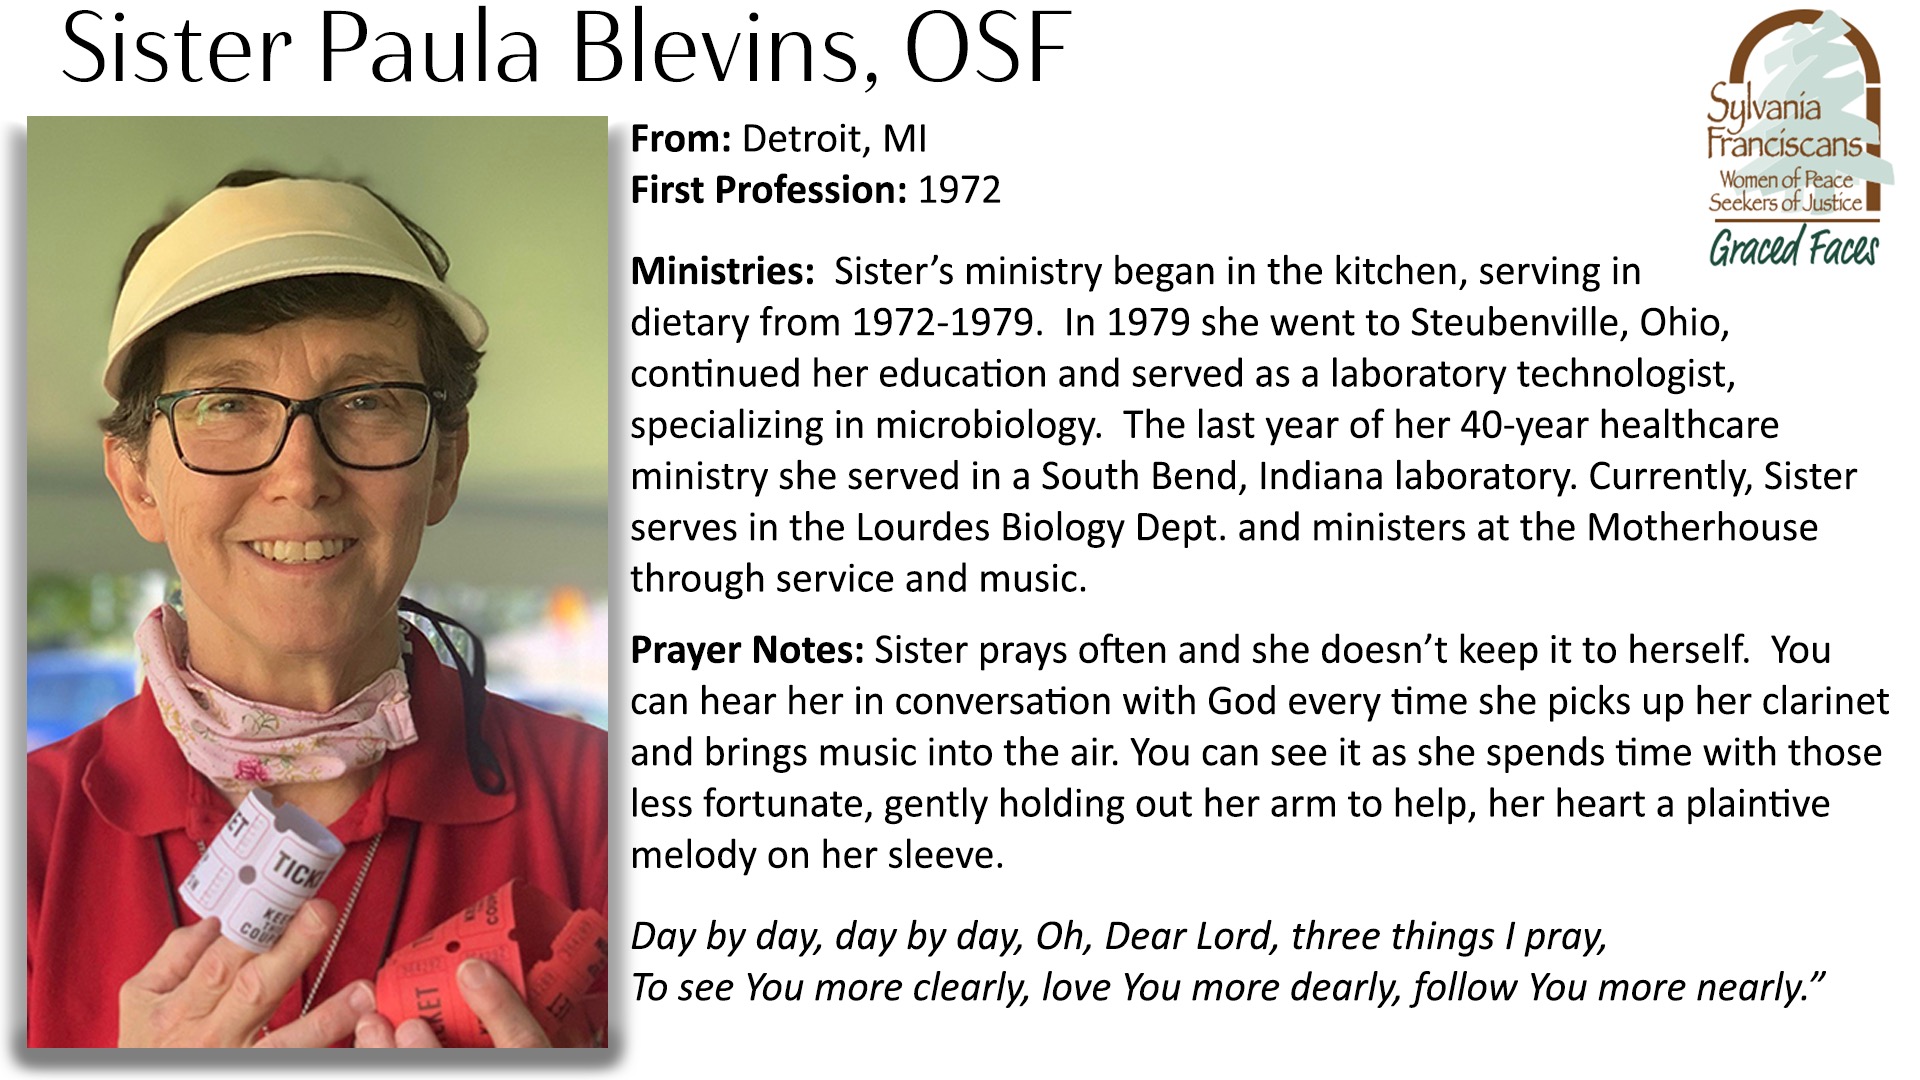 Sister Paula Blevins, OSF